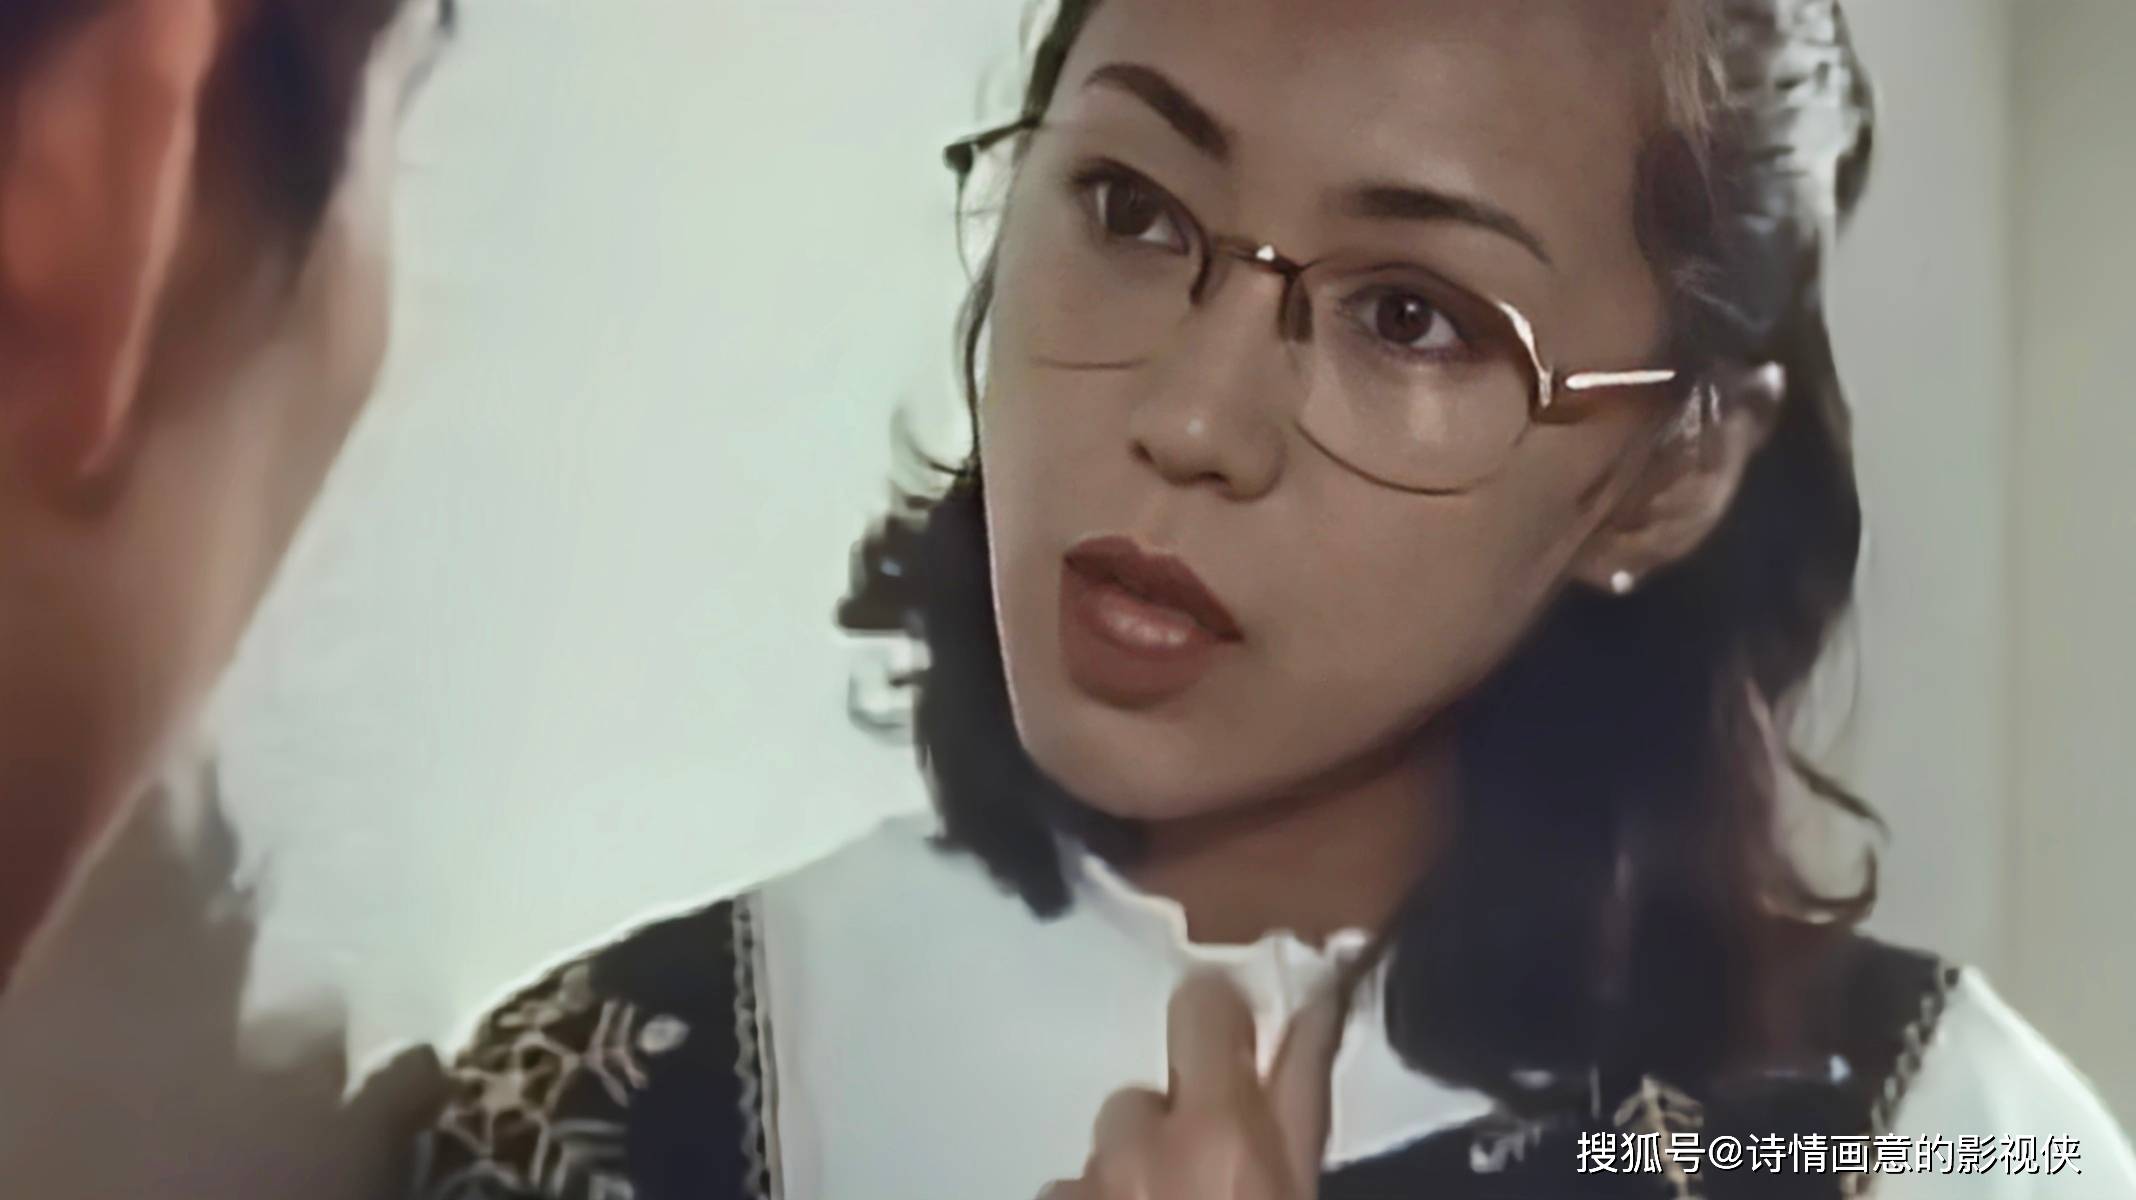 日本伦理电影《女教师日记2》:东京夜色下的伦理抉择, 真弓伦子演绎